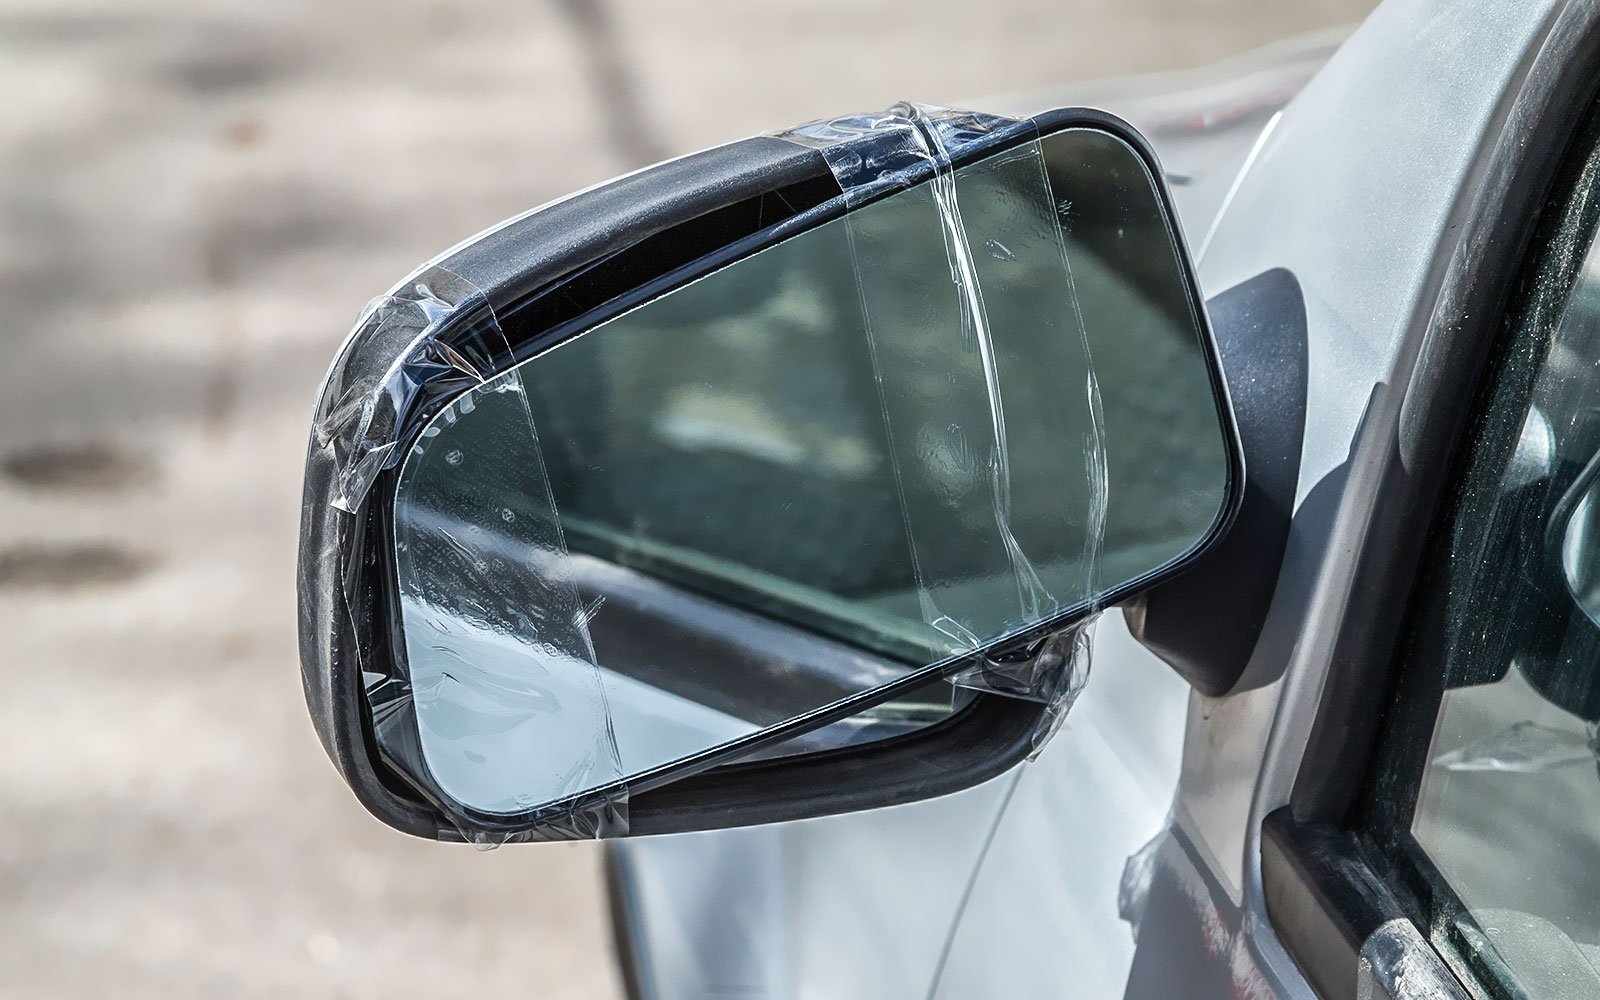 Изготовление автомобильных зеркал в СПб, лучшие цены и качество